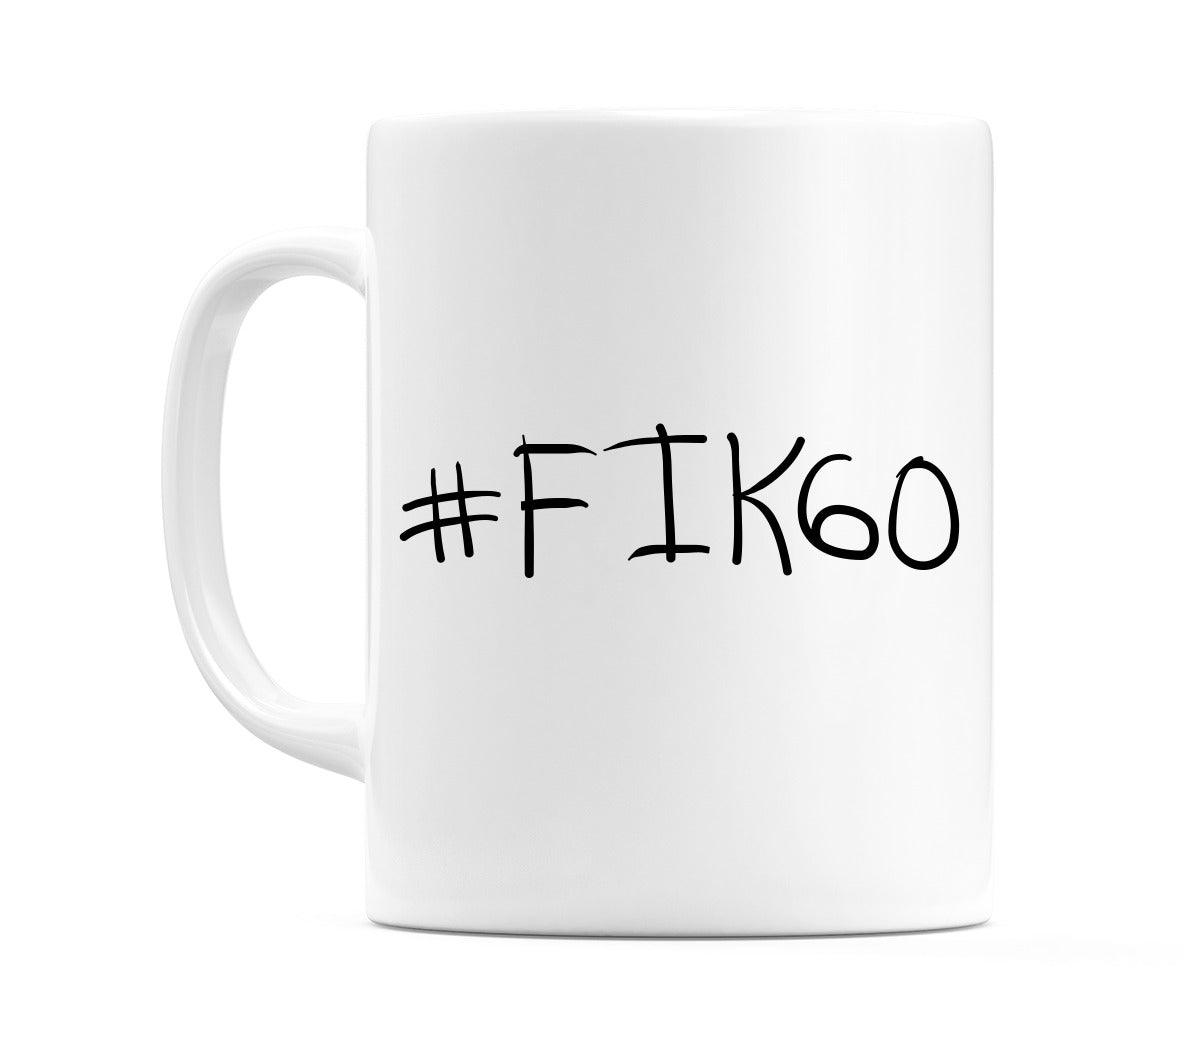 #FIK60 Mug